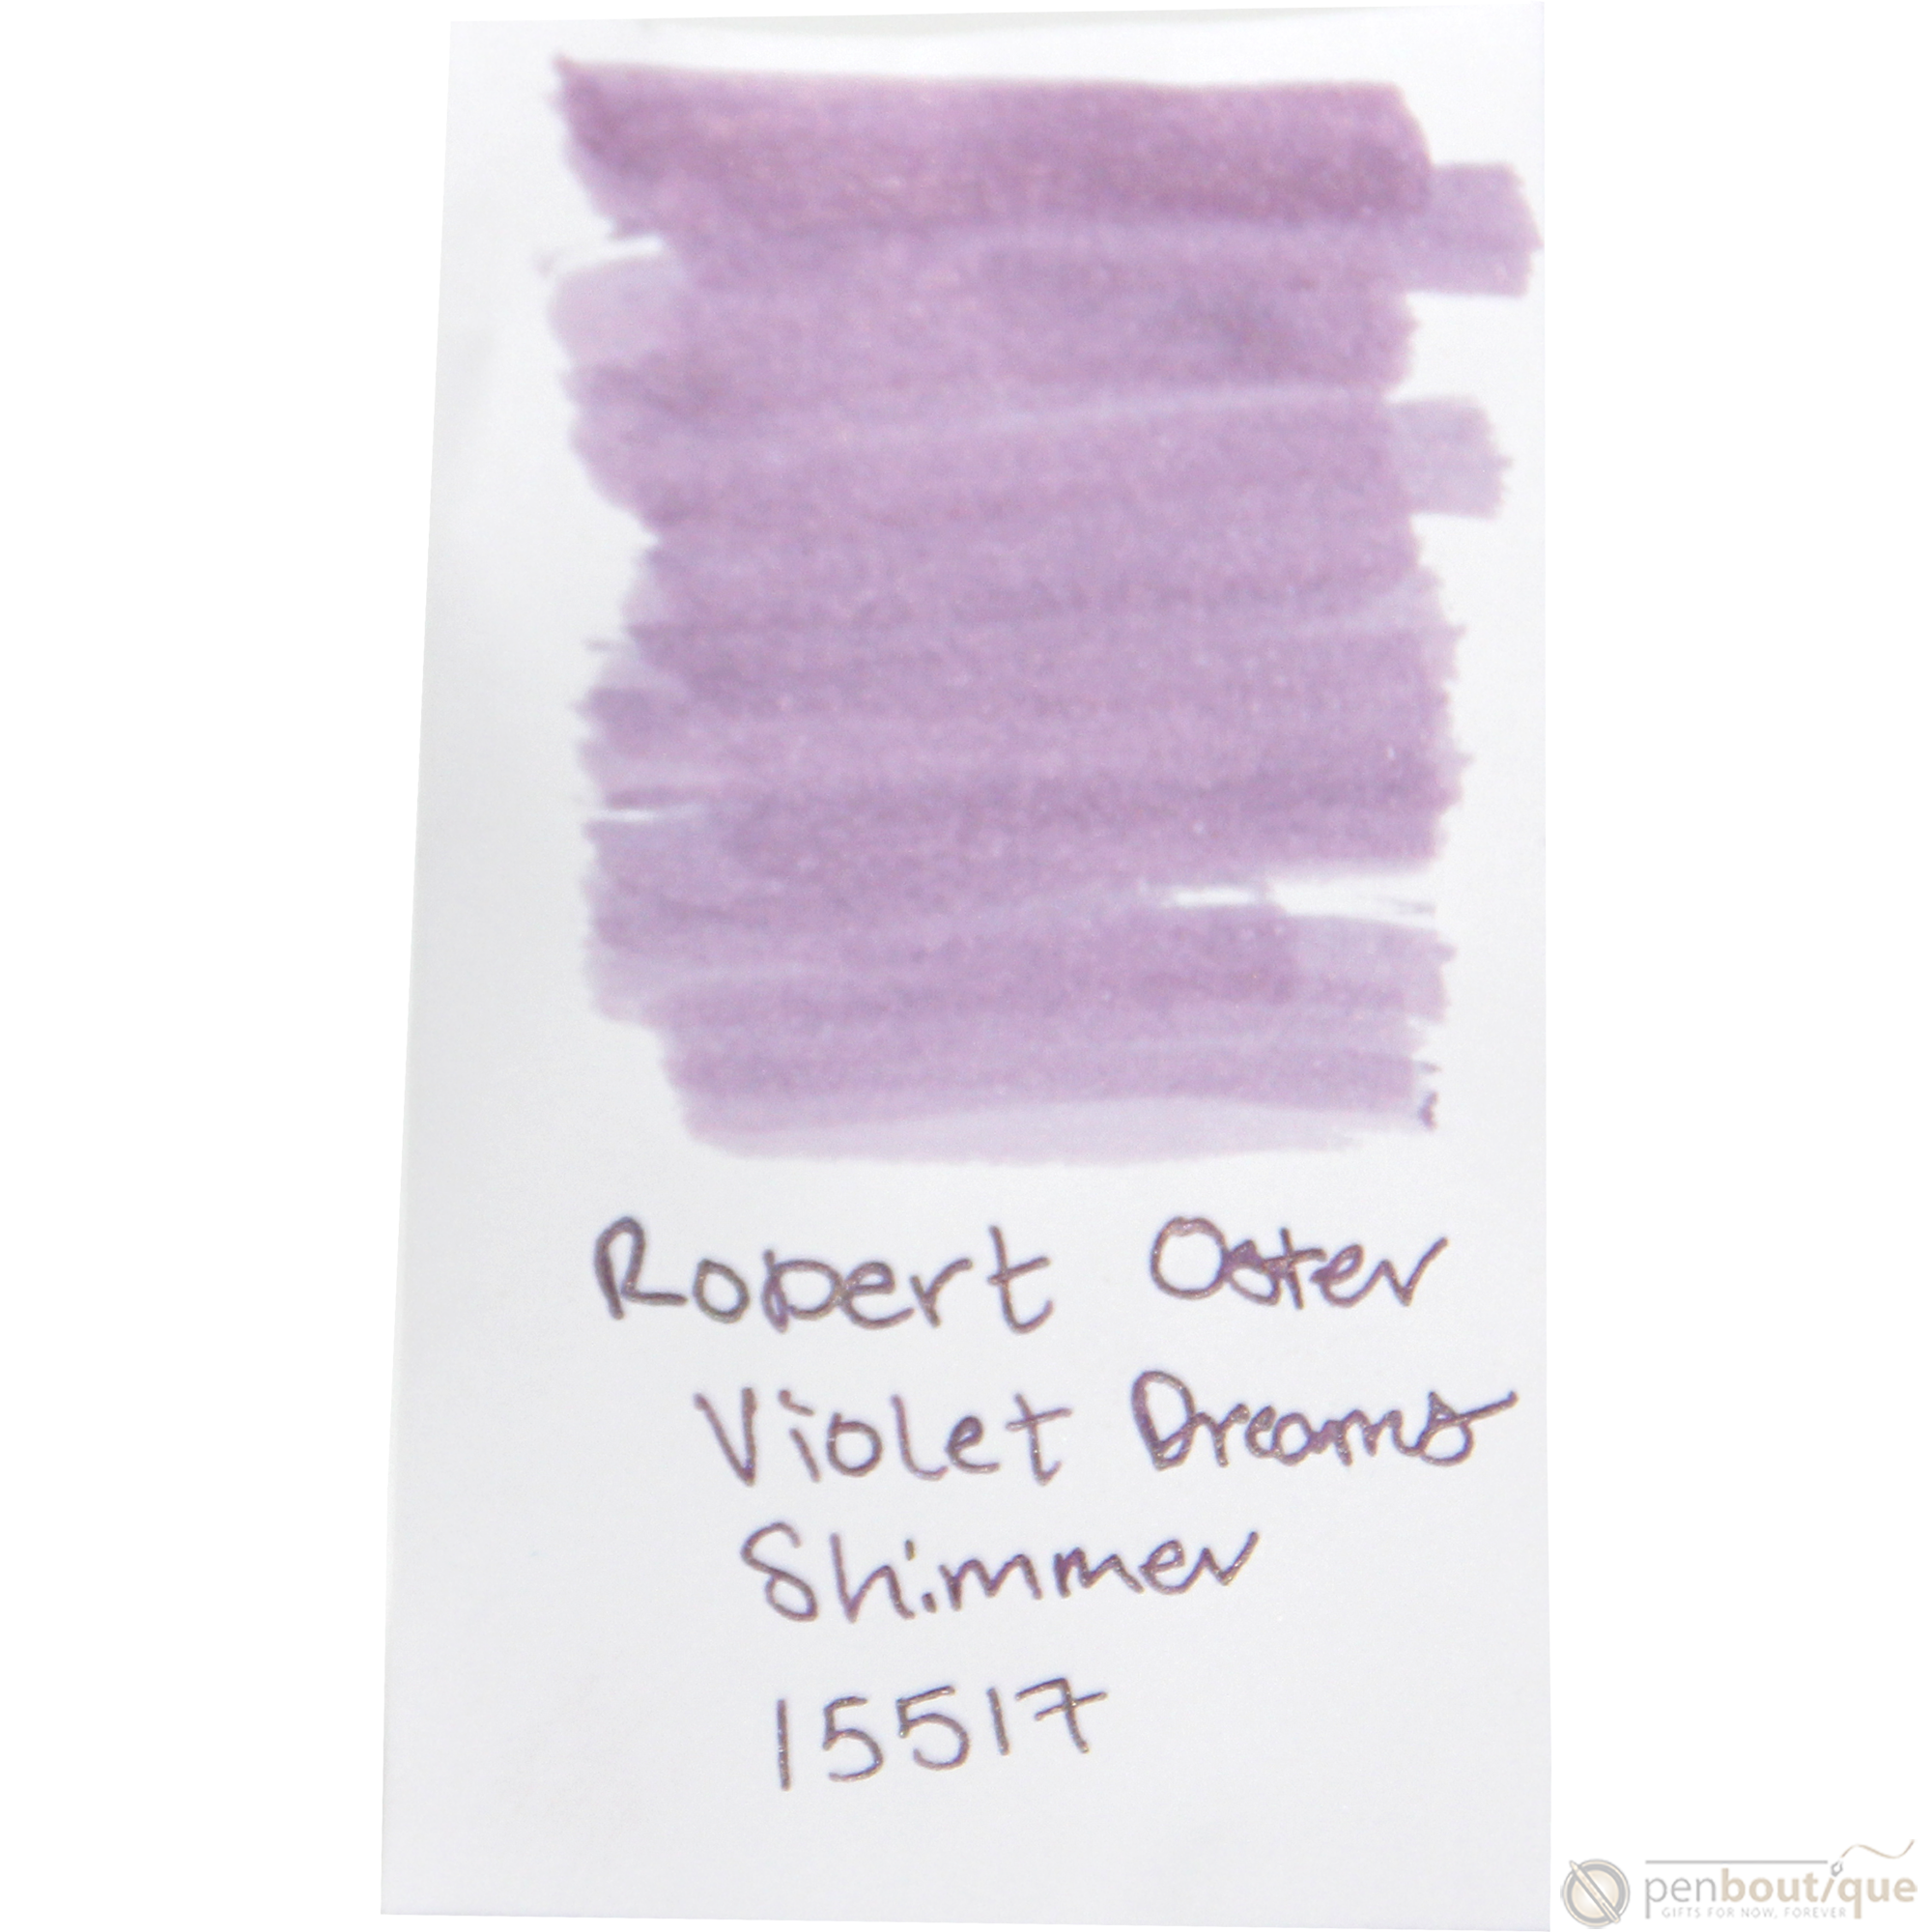 Robert Oster Shake'N'Shimmy Ink Bottle - Violet Dreams - 50ml-Pen Boutique Ltd